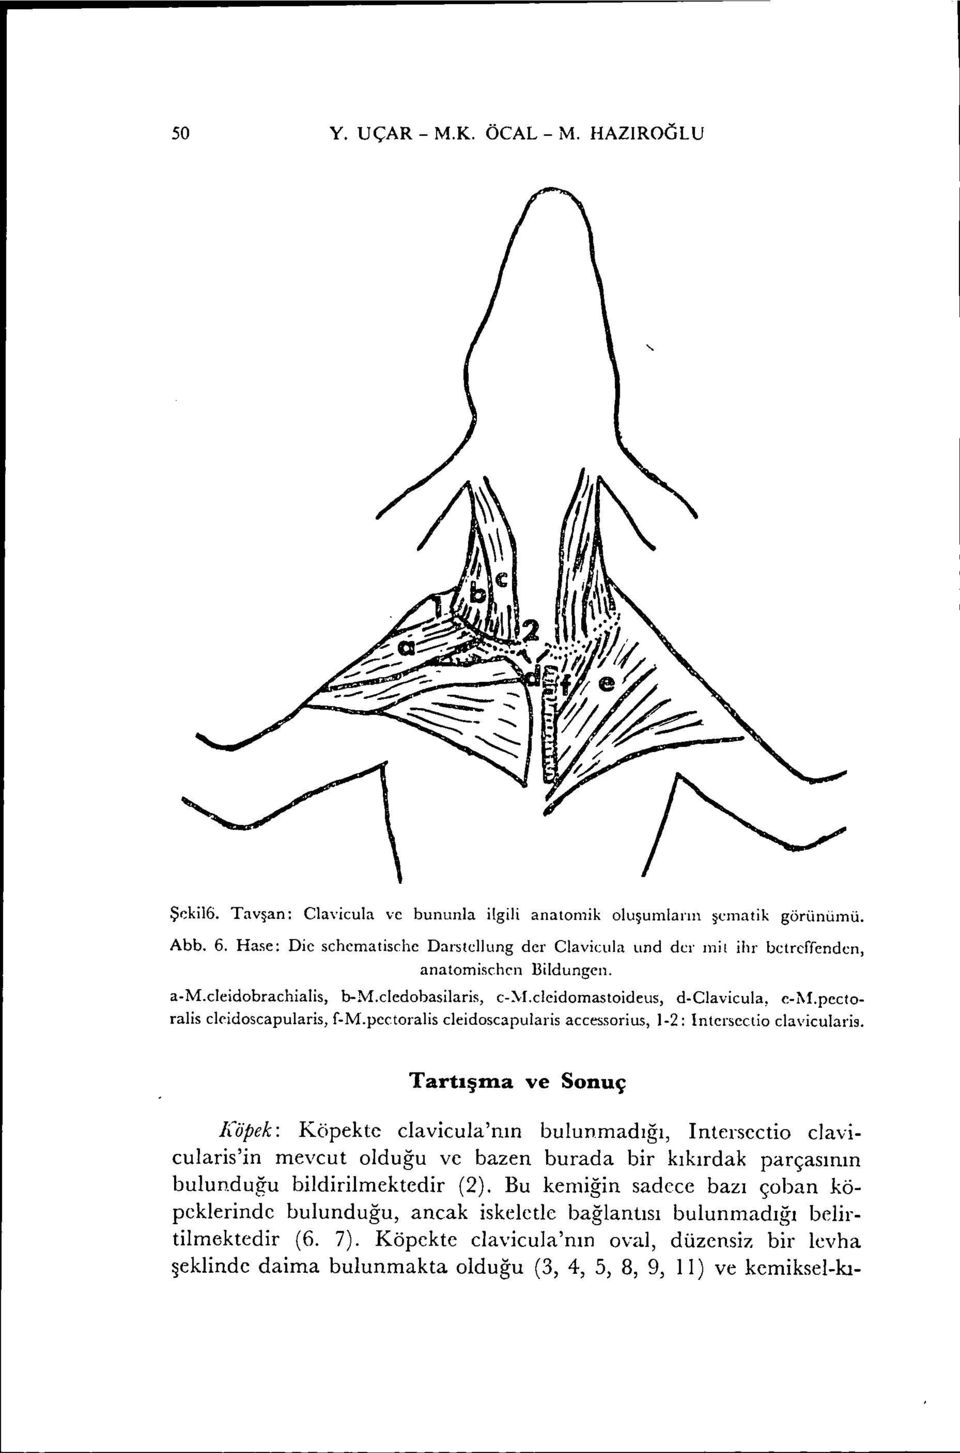 pectoralis clcidoseapularis, f-m.pectoralis cleidoscapularis accessorills, 1-2: Intersectio clavicularis.